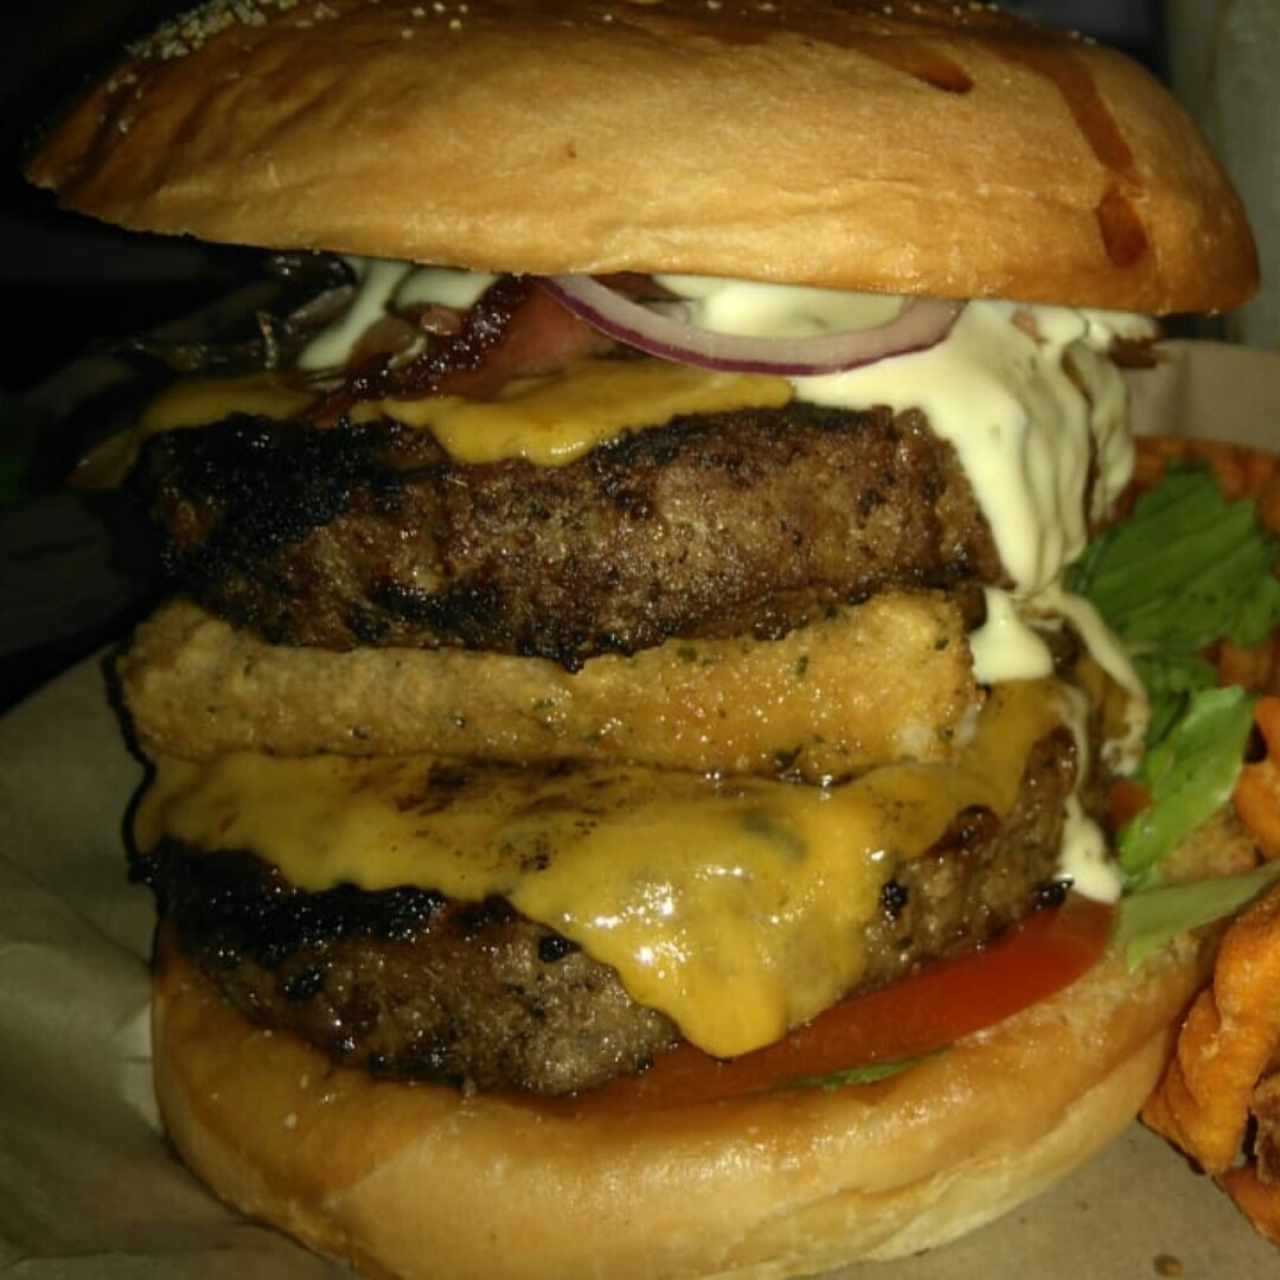 XXXL burger